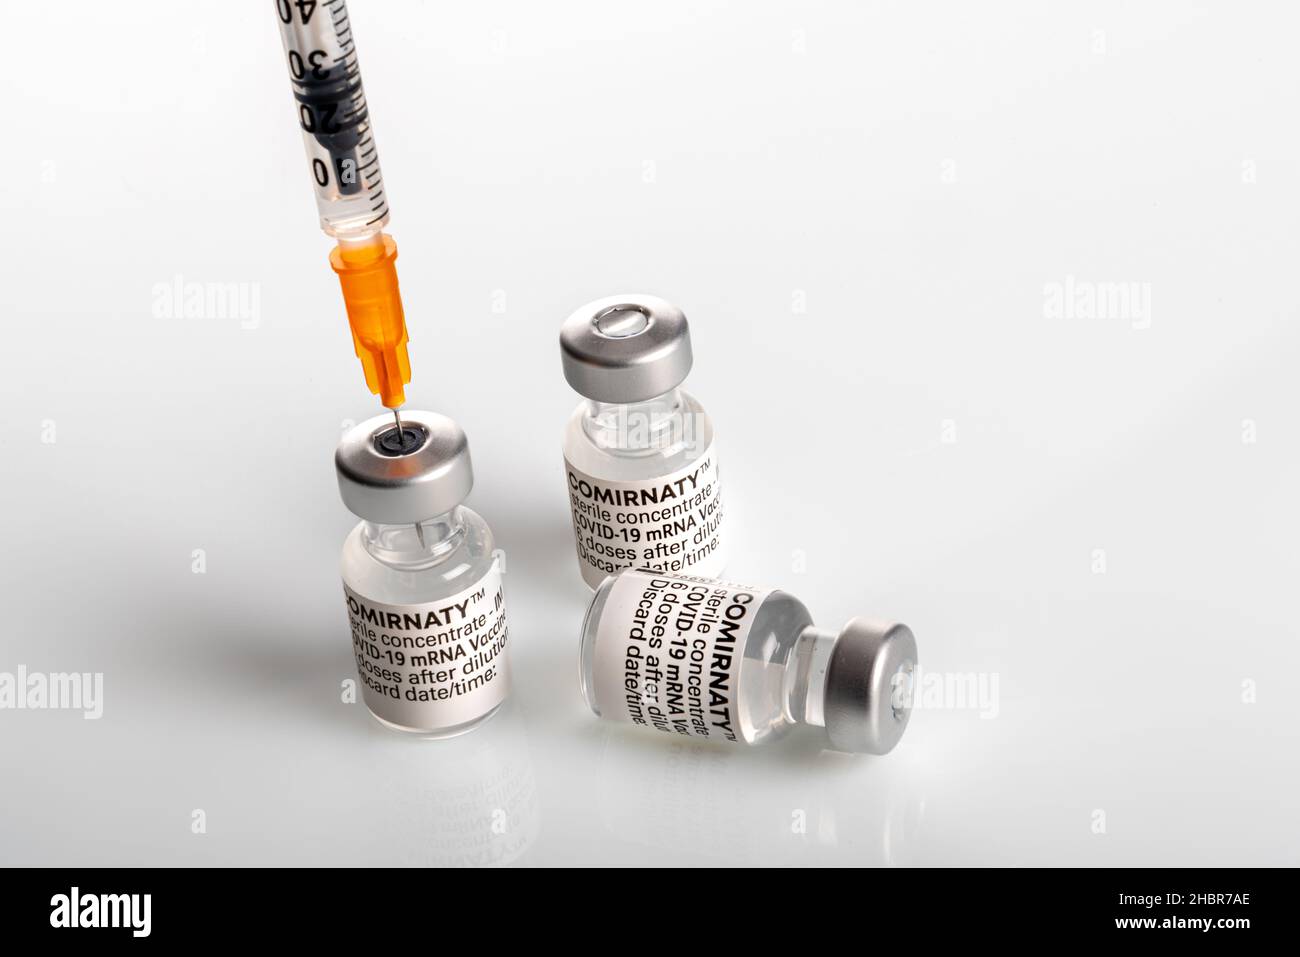 Torino, Italia - 18 dicembre 2021: Vaccino Pfizer-BioNTech COVID-19 flaconcini di Comirnaty, tre flaconcini con siringa per aspirare la dose di vaccino, terza dose di conces Foto Stock